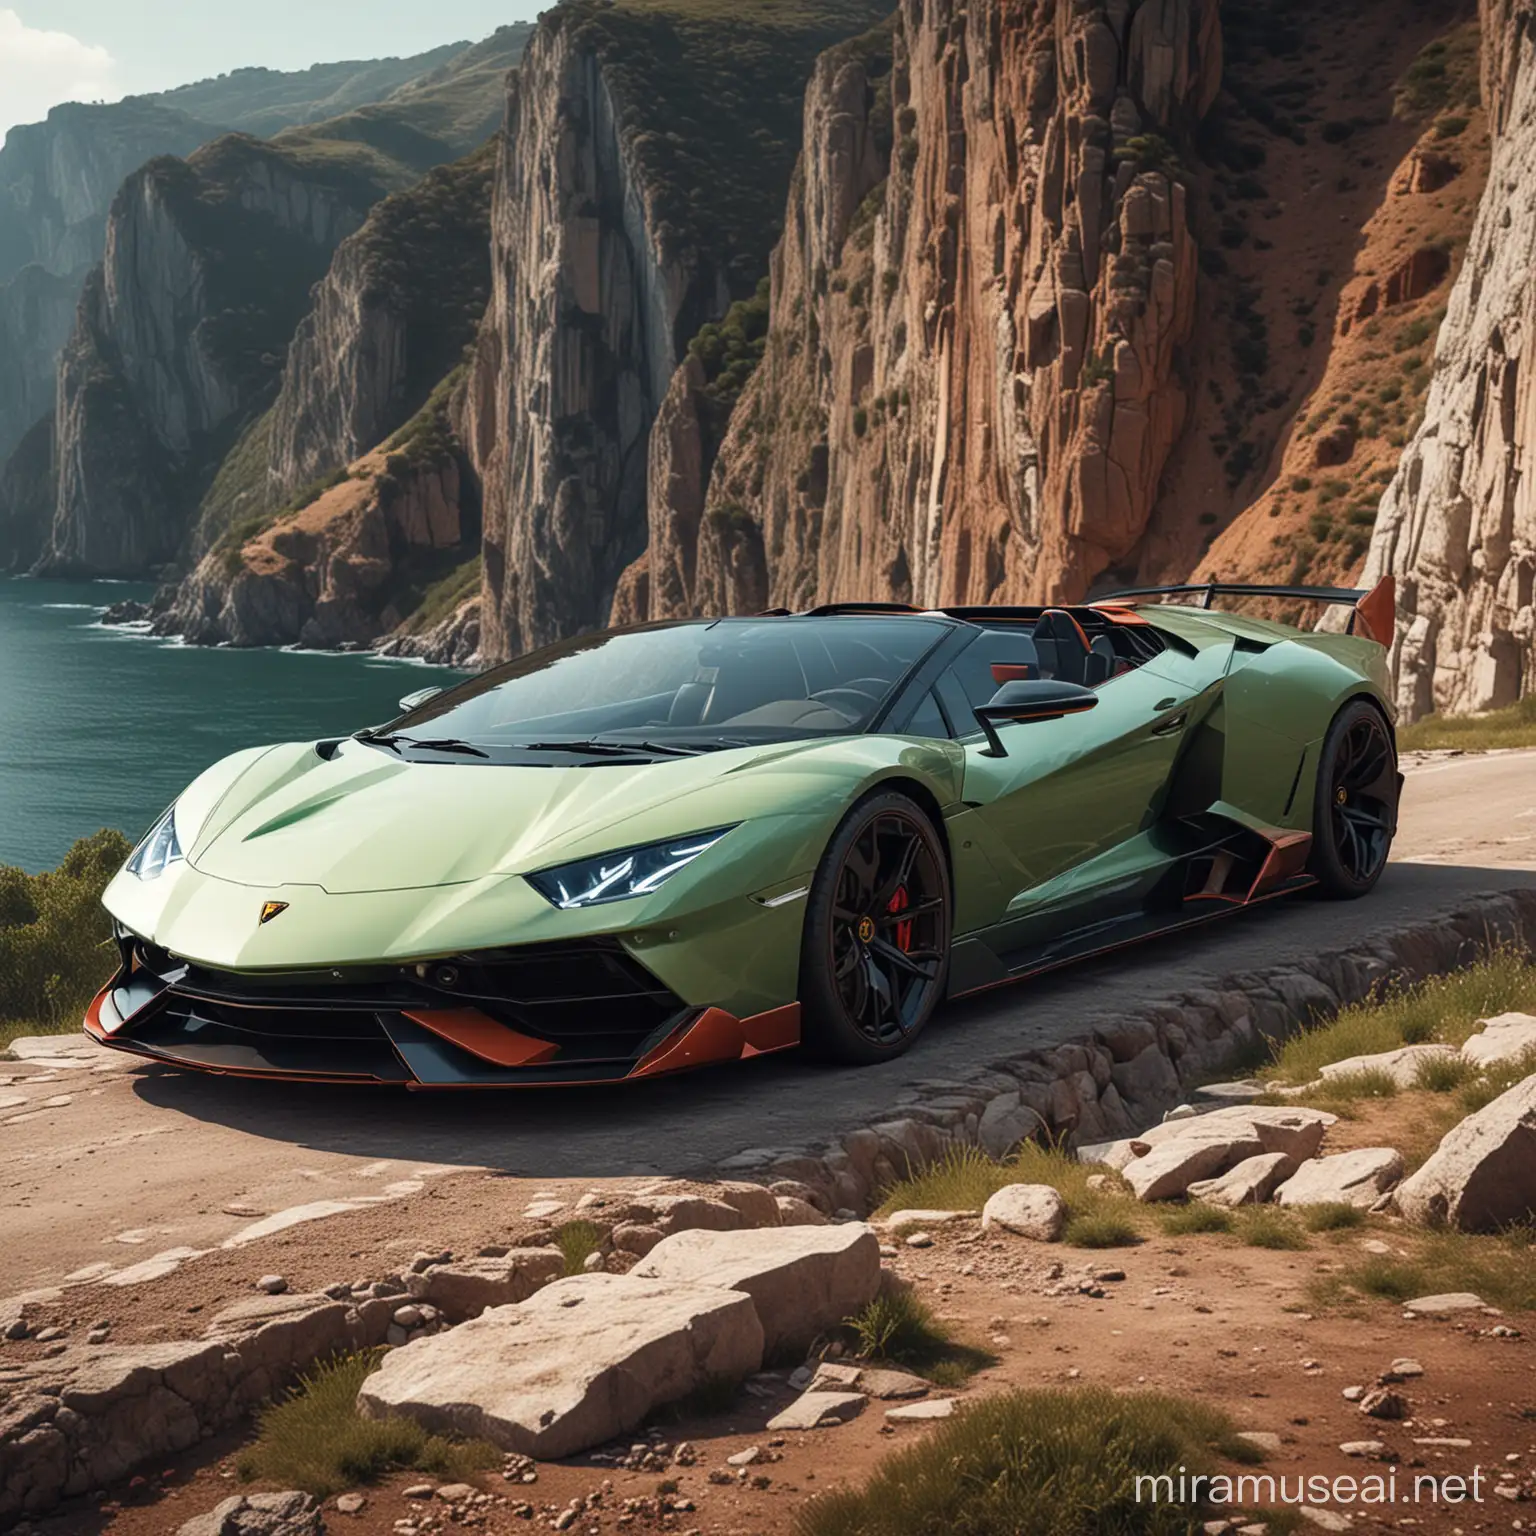 Luxurious Lamborghini Sian overlooking Stunning Cliffside Vista